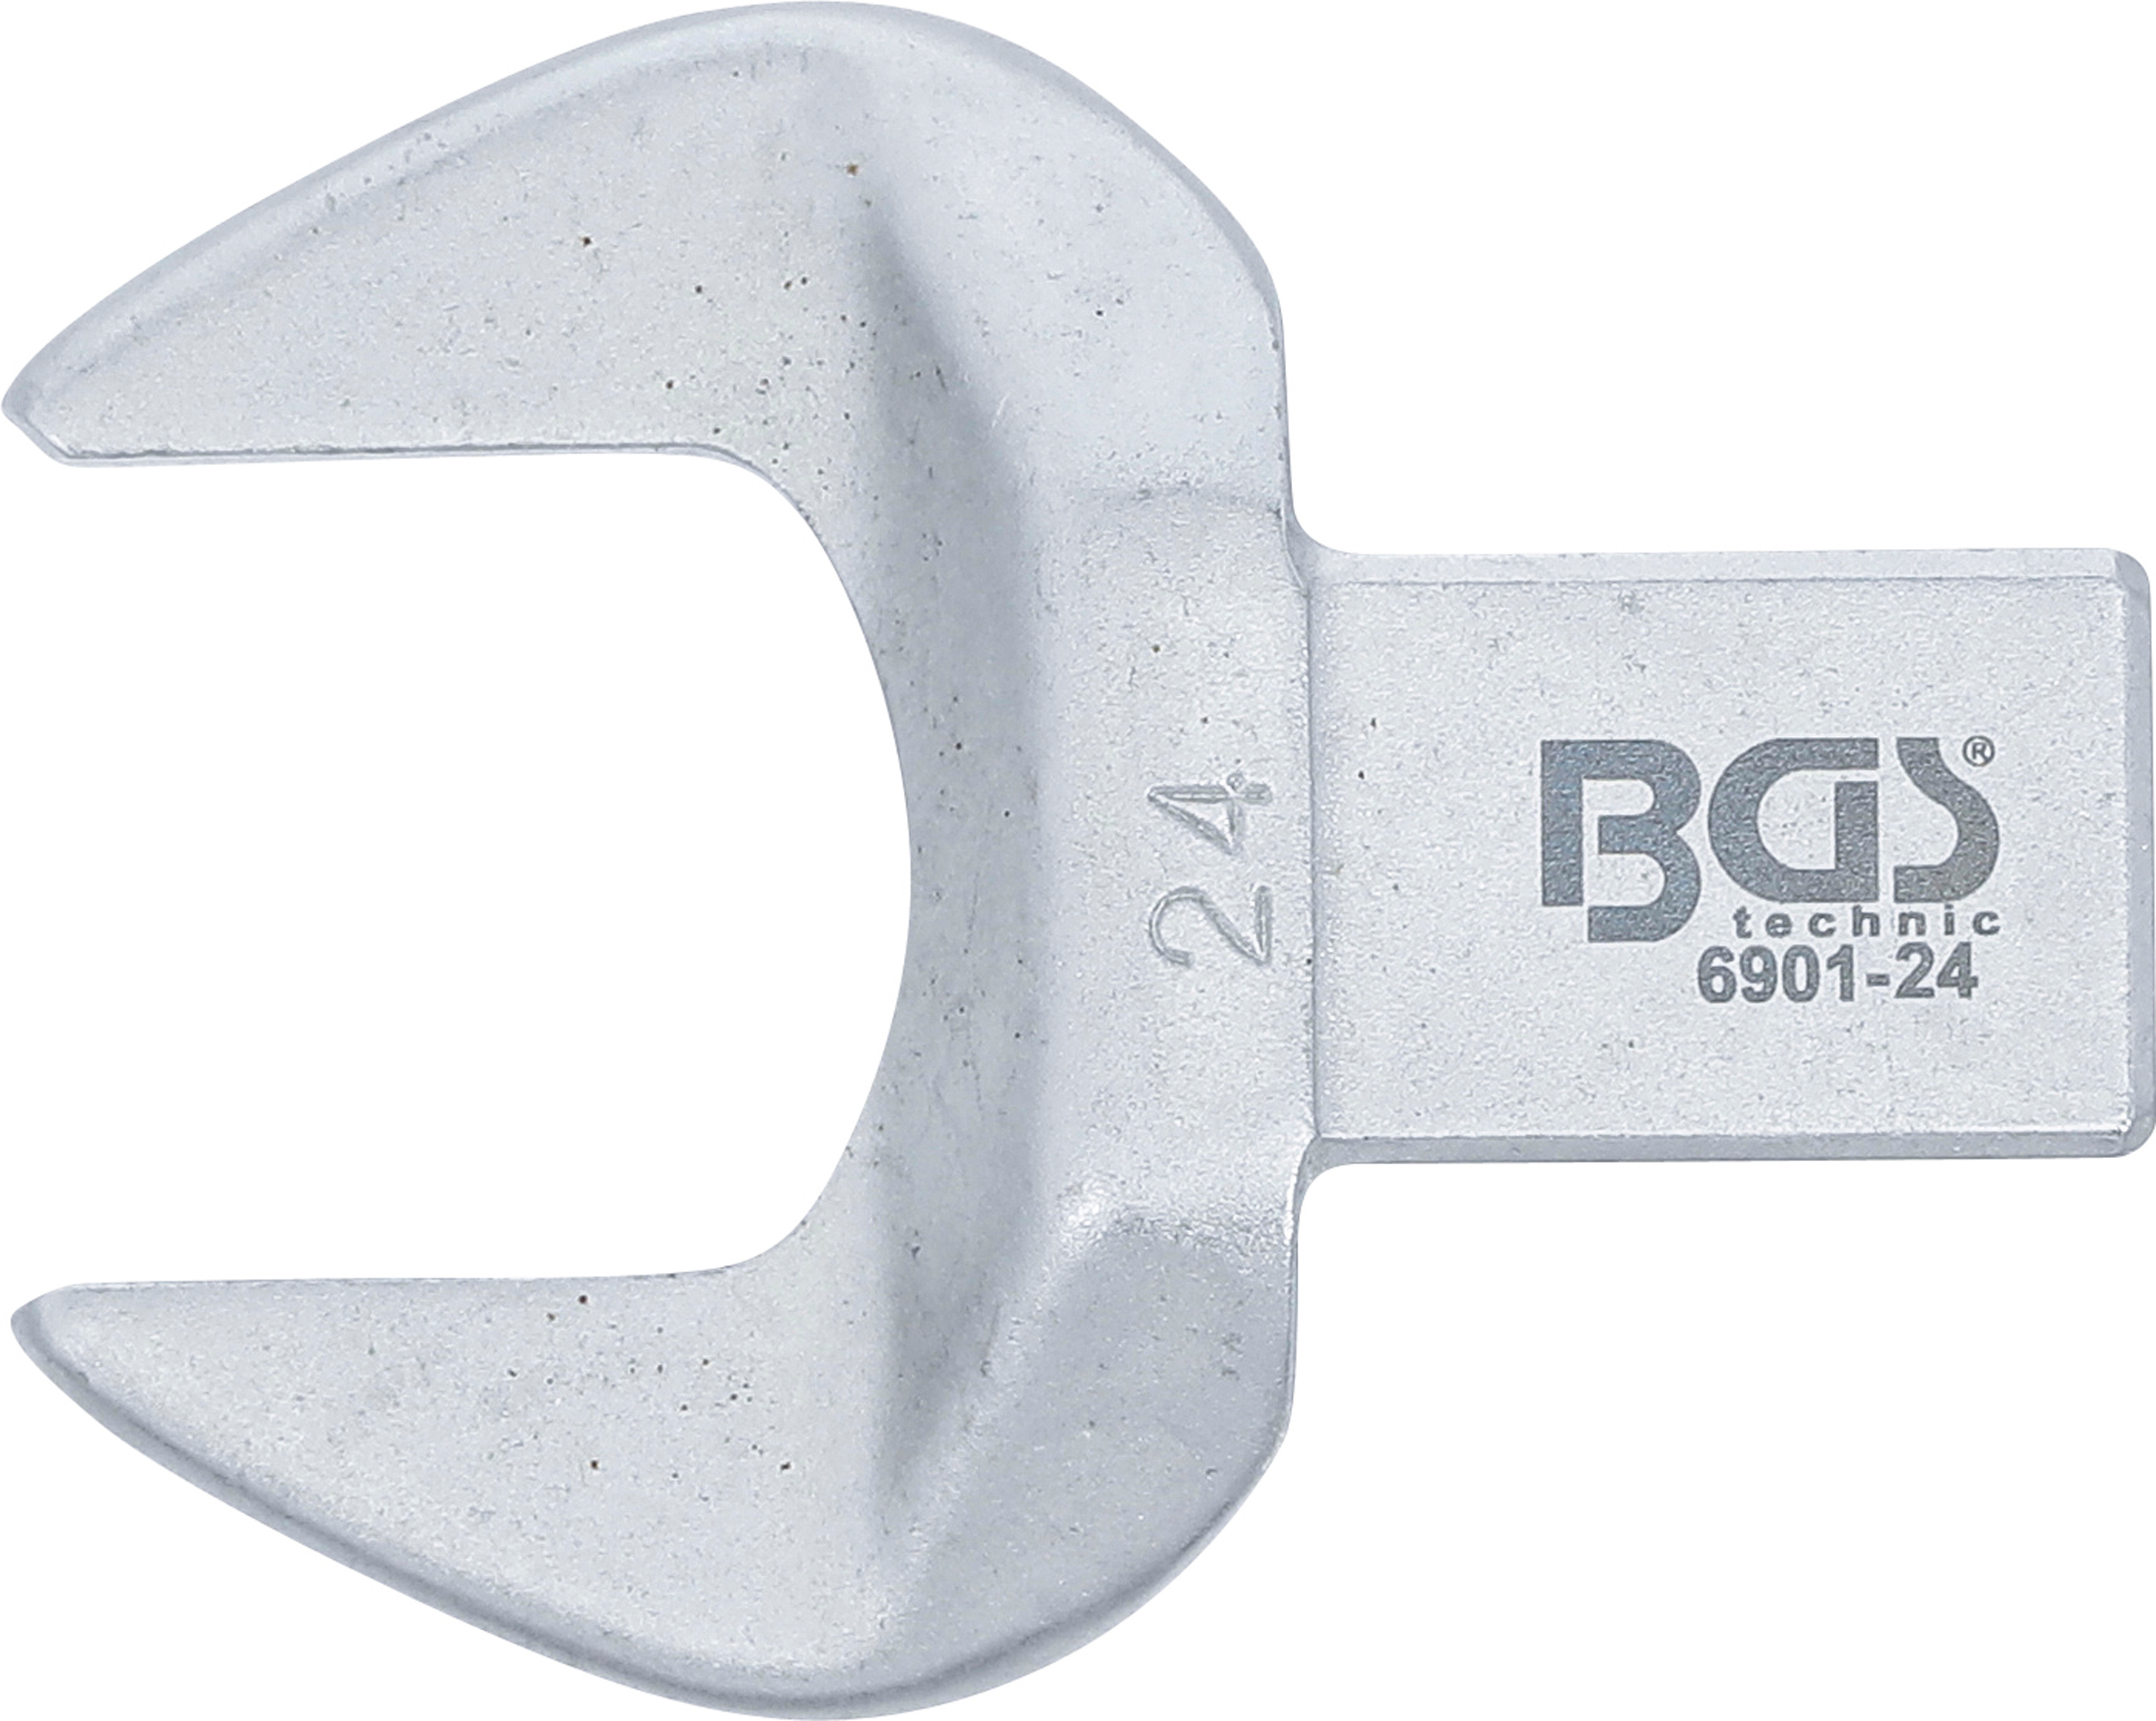 BGS Einsteck-Maulschlüssel | 24 mm | Aufnahme 14 x 18 mm